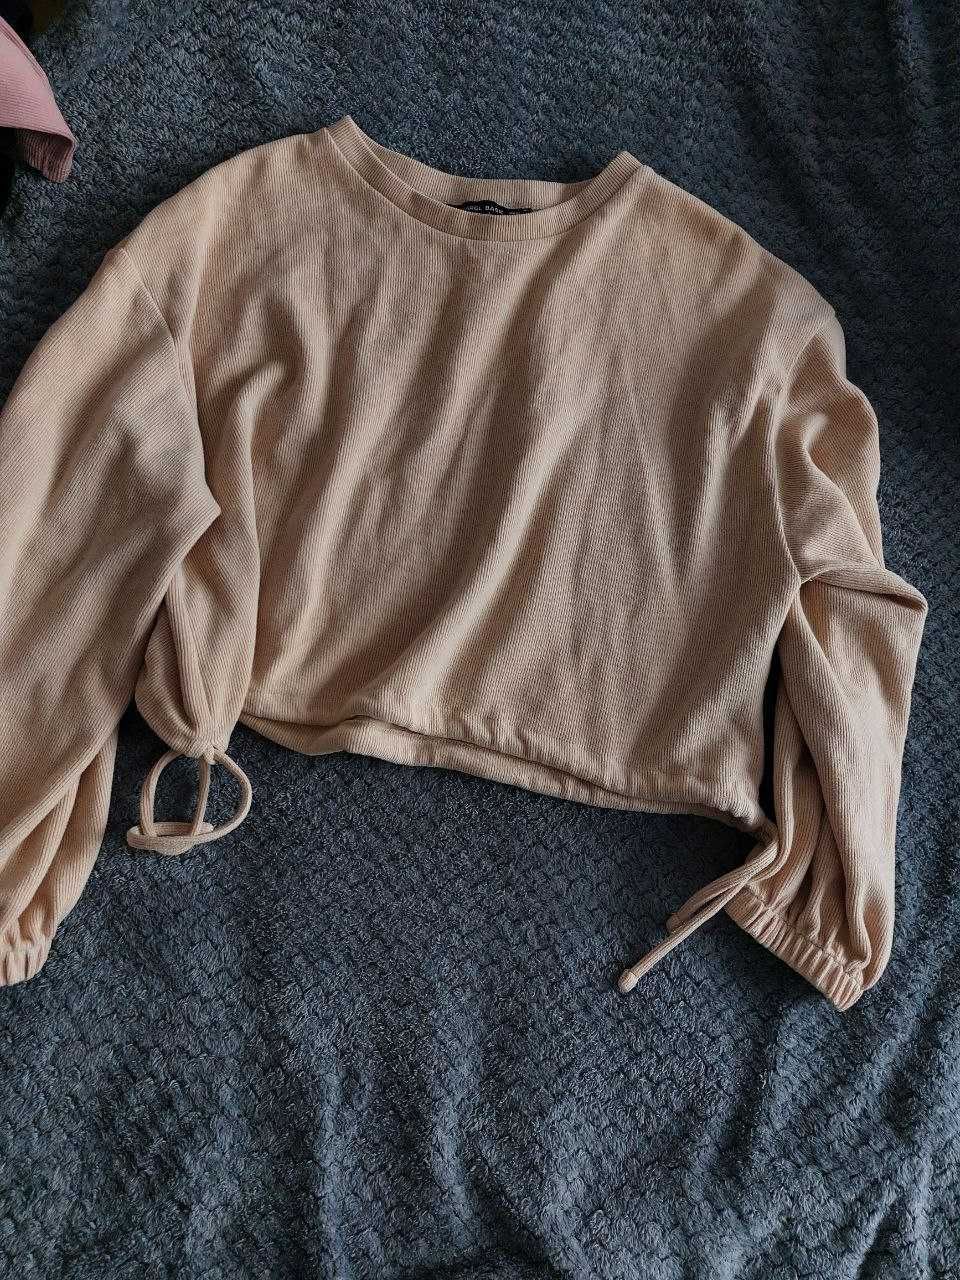 Damski beżowy sweter z wiązaniami na dole, rozmiar L!